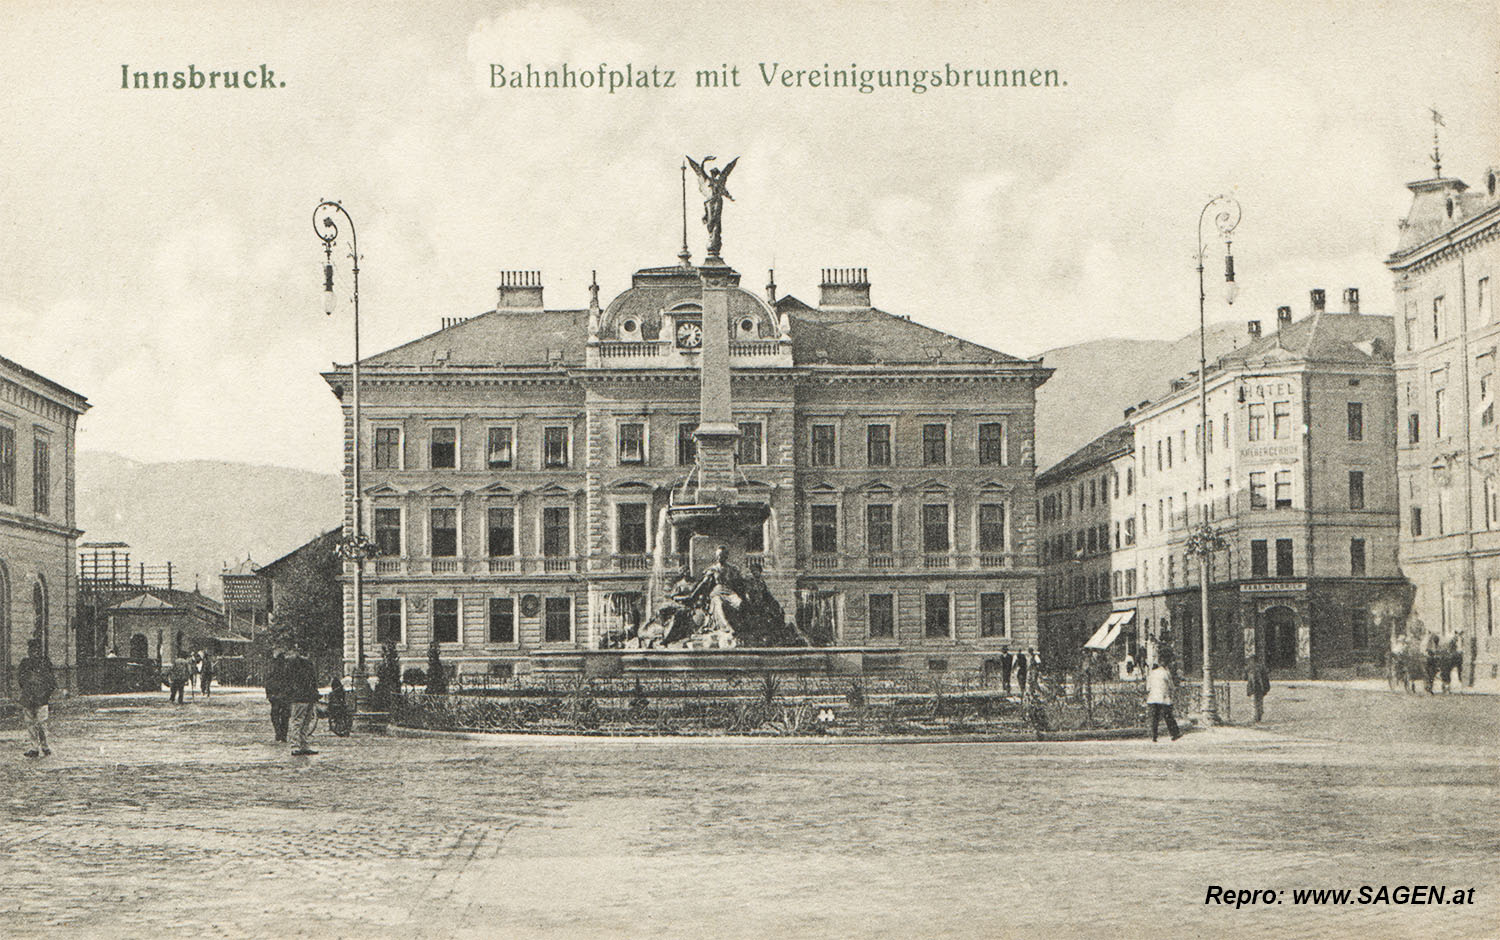 Innsbruck, Bahnhofplatz mit Vereinigungsbrunnen